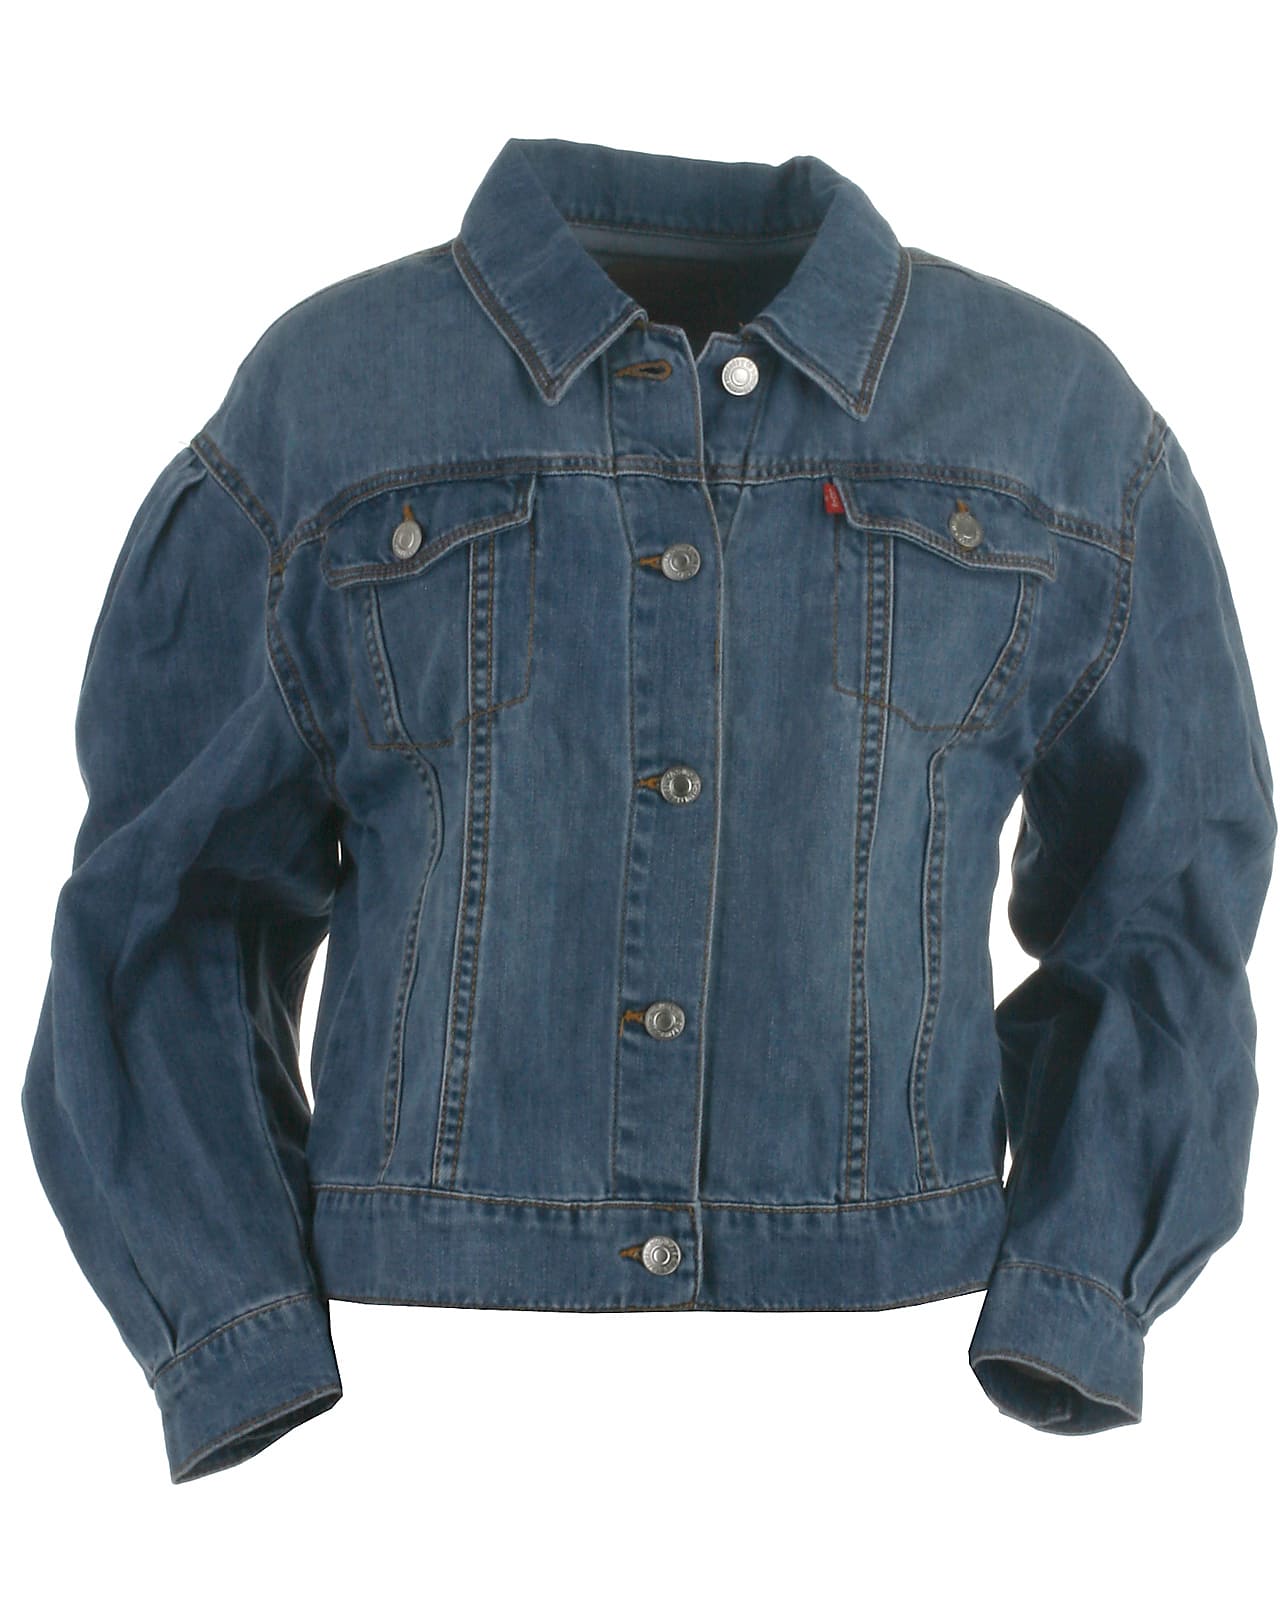 Levis denim jakke, Trucker, milestone. Stort udvalg af jakker til børn, teens voksne.